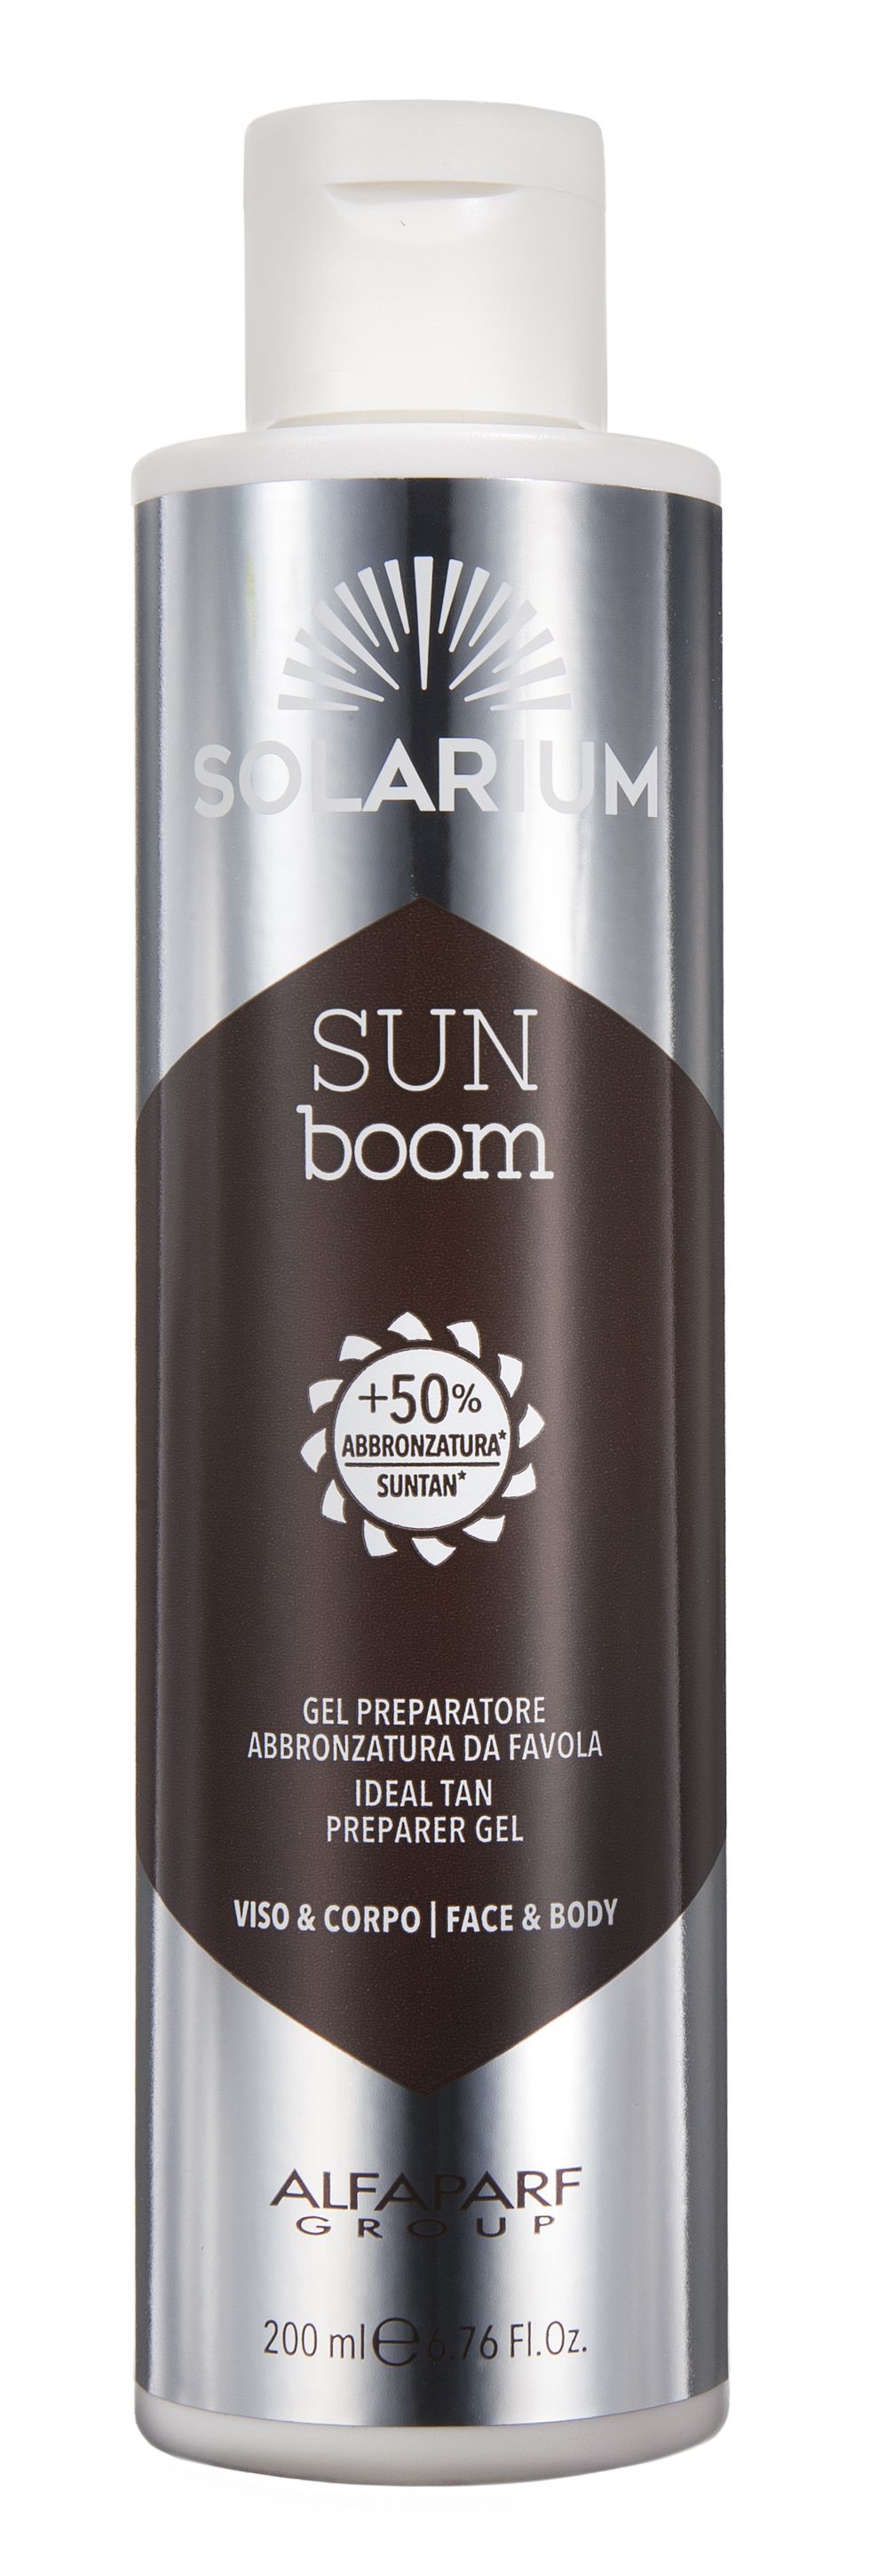 Si usa 20 giorni primadell'esposizione su visoe corpo per accelerare latintarella: Solarium SunBoom Gel PreparatoreAbbronzatura da Favoladi Alfaparf (27 euro,in istituto).